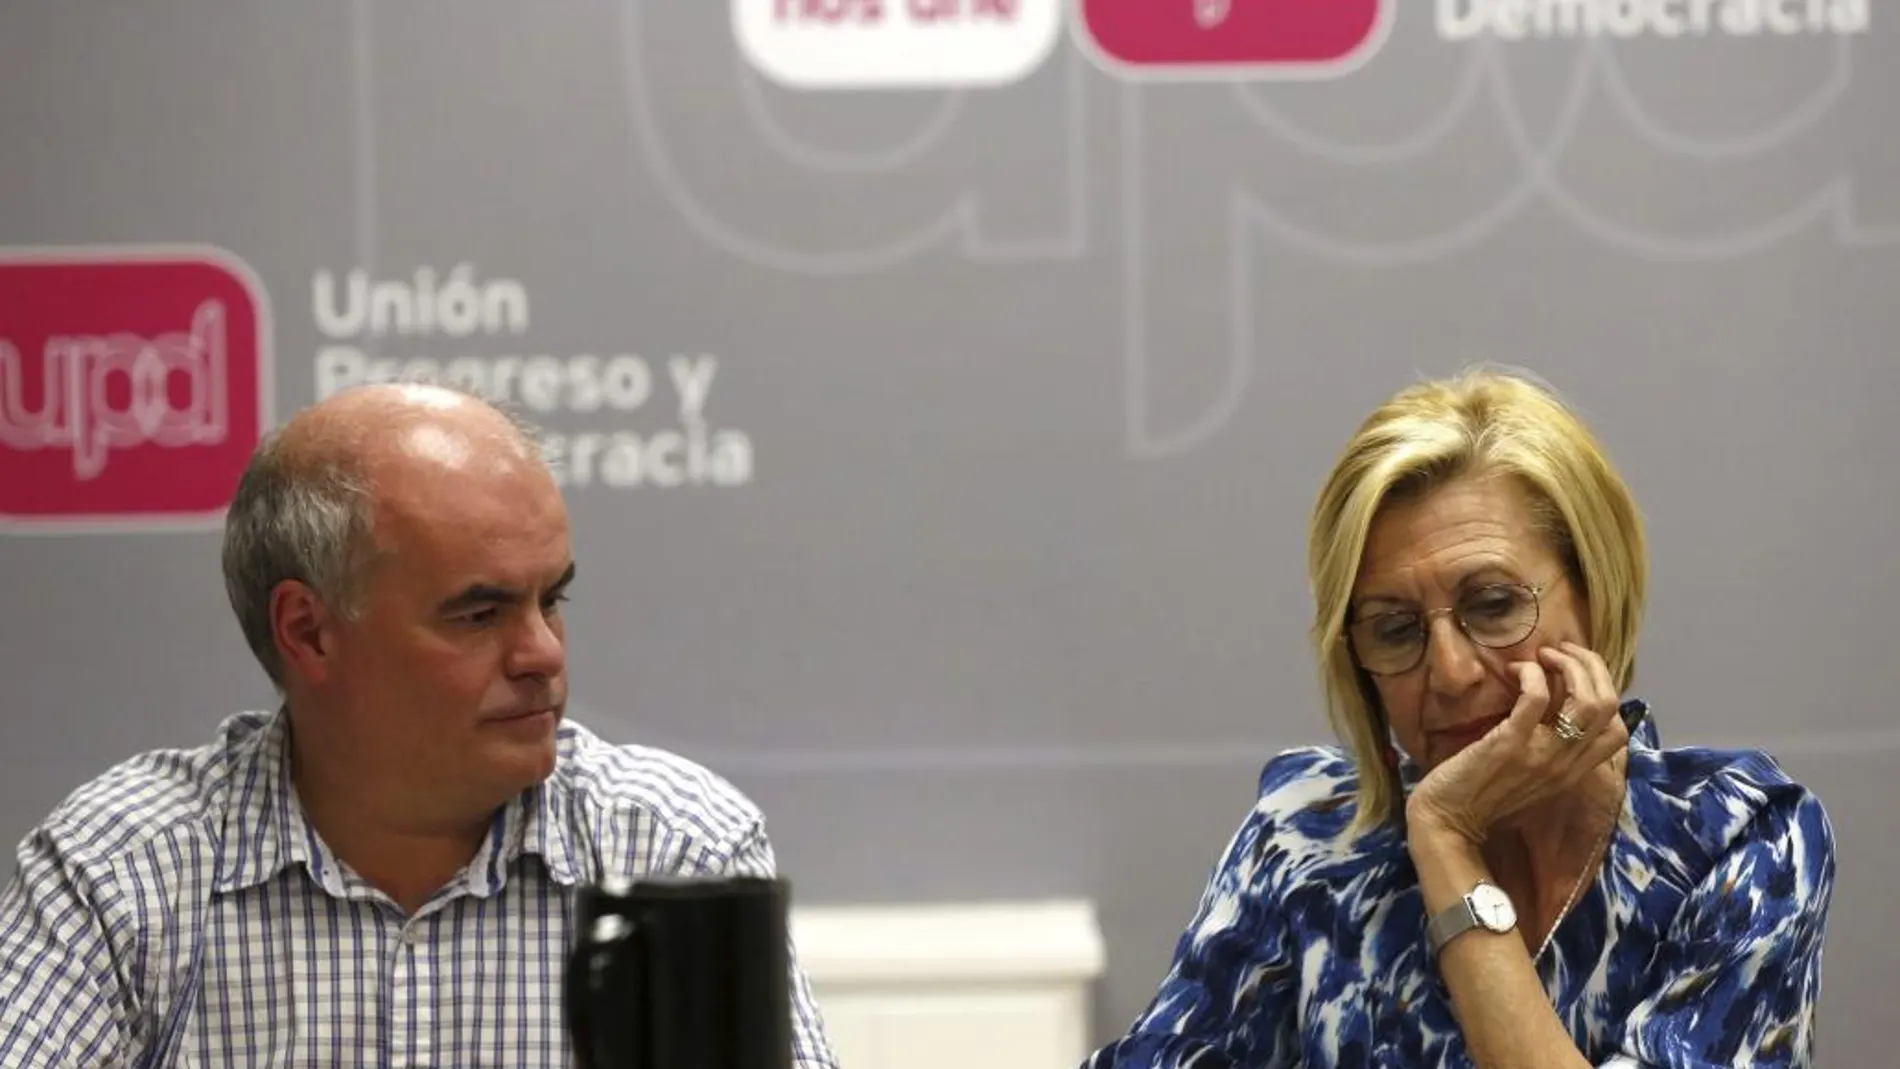 La líder de UPyD, Rosa Díez, junto al diputado nacional, Carlos Martínez Gorriarán, durante la reunión del Consejo de Dirección de UPyD